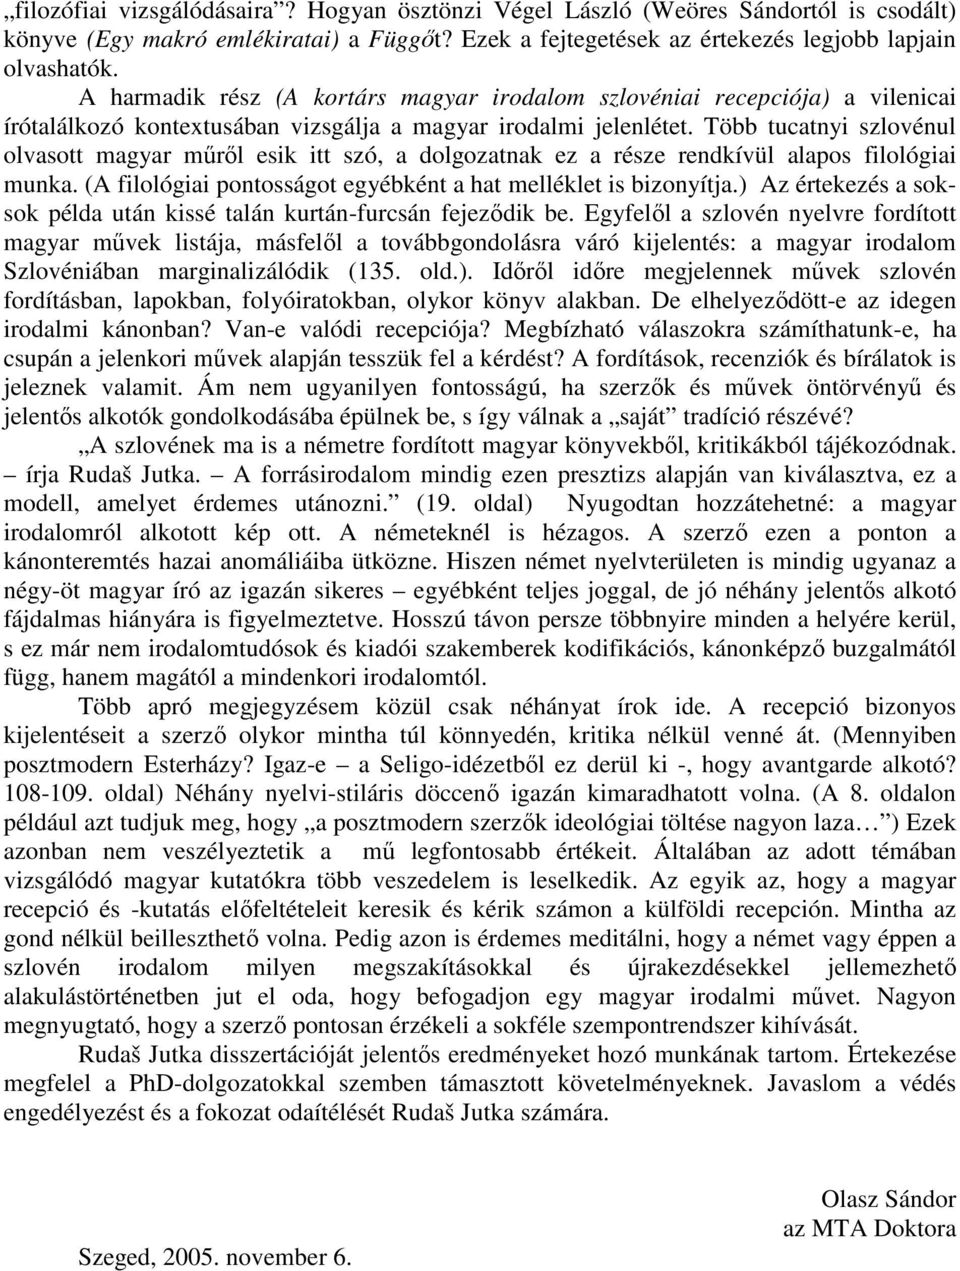 Több tucatnyi szlovénul olvasott magyar mőrıl esik itt szó, a dolgozatnak ez a része rendkívül alapos filológiai munka. (A filológiai pontosságot egyébként a hat melléklet is bizonyítja.